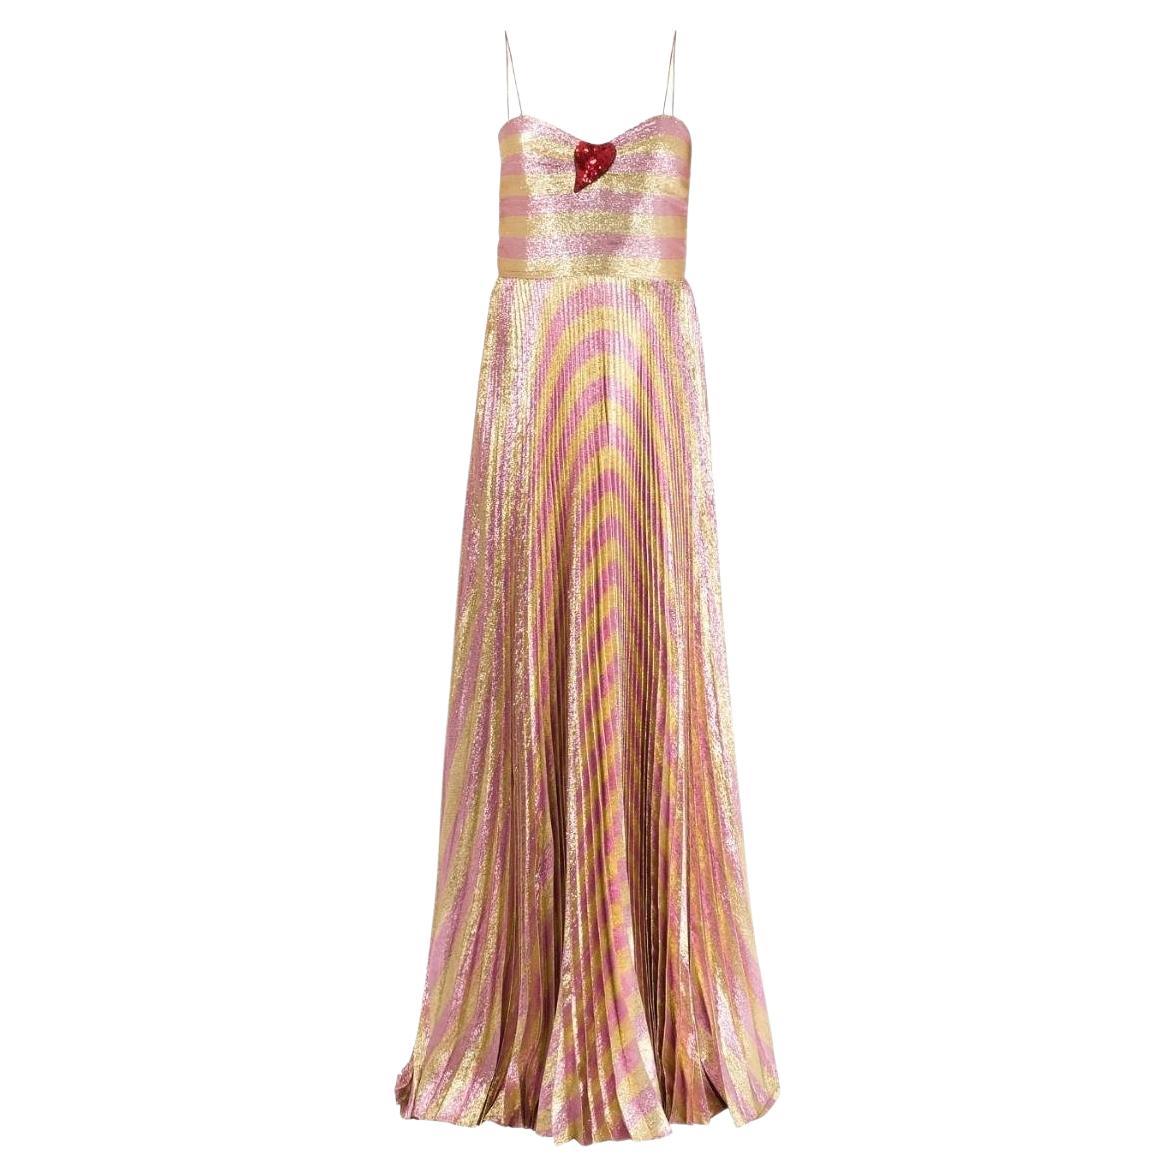 Gucci Baiadera Striped Lurex Gown IT 40 (US 4)